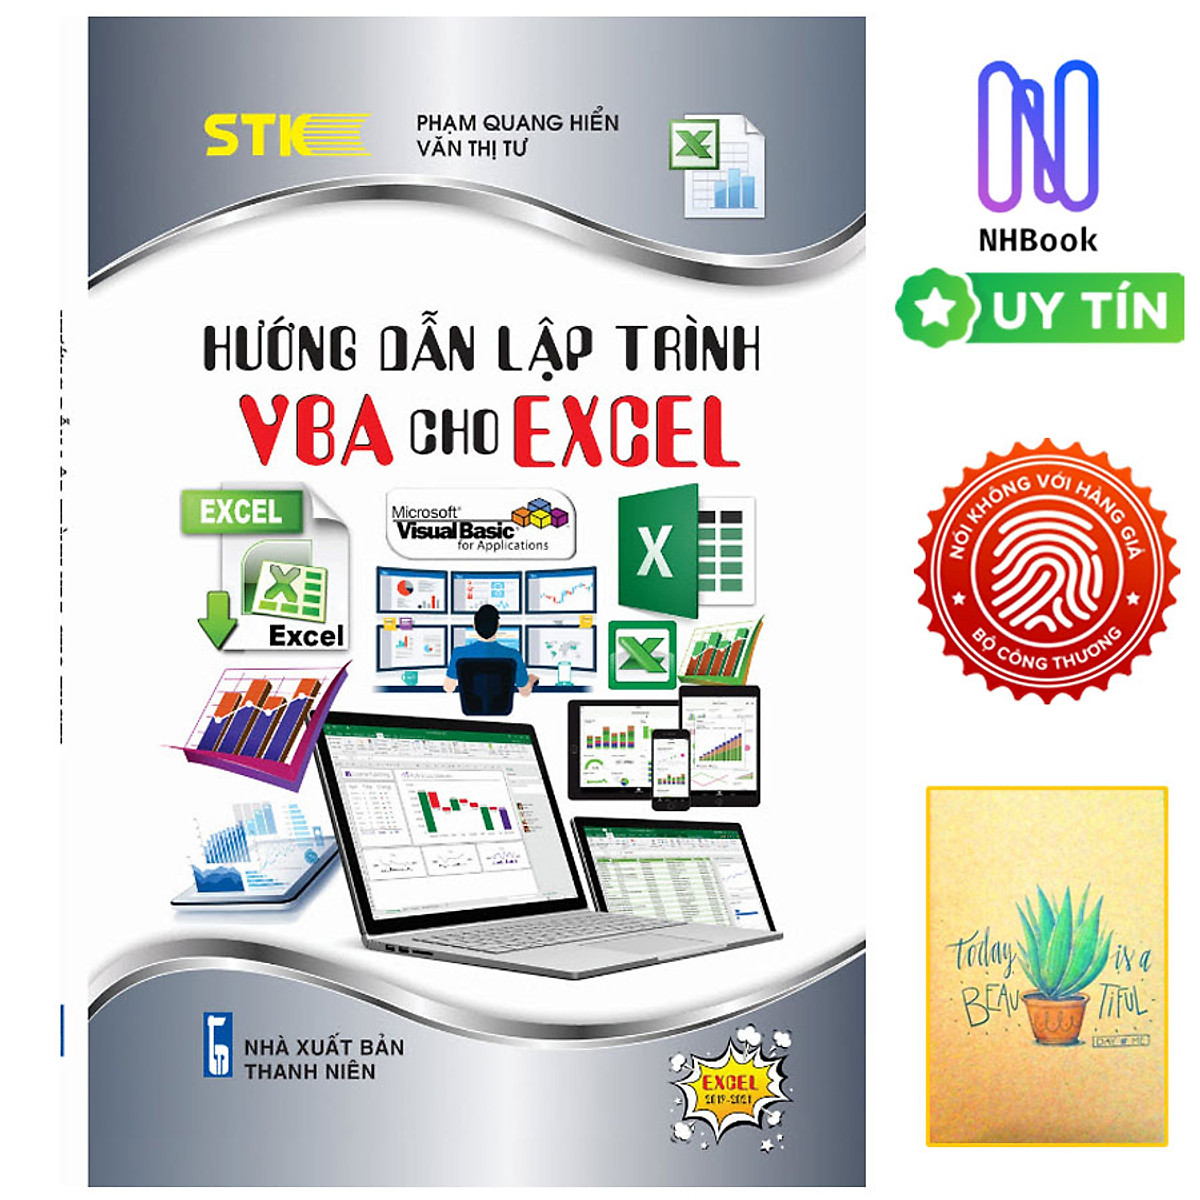 Sách Tin Học - Hướng Dẫn Lập Trình VBA Cho Excel - Bìa mềm- STK ...